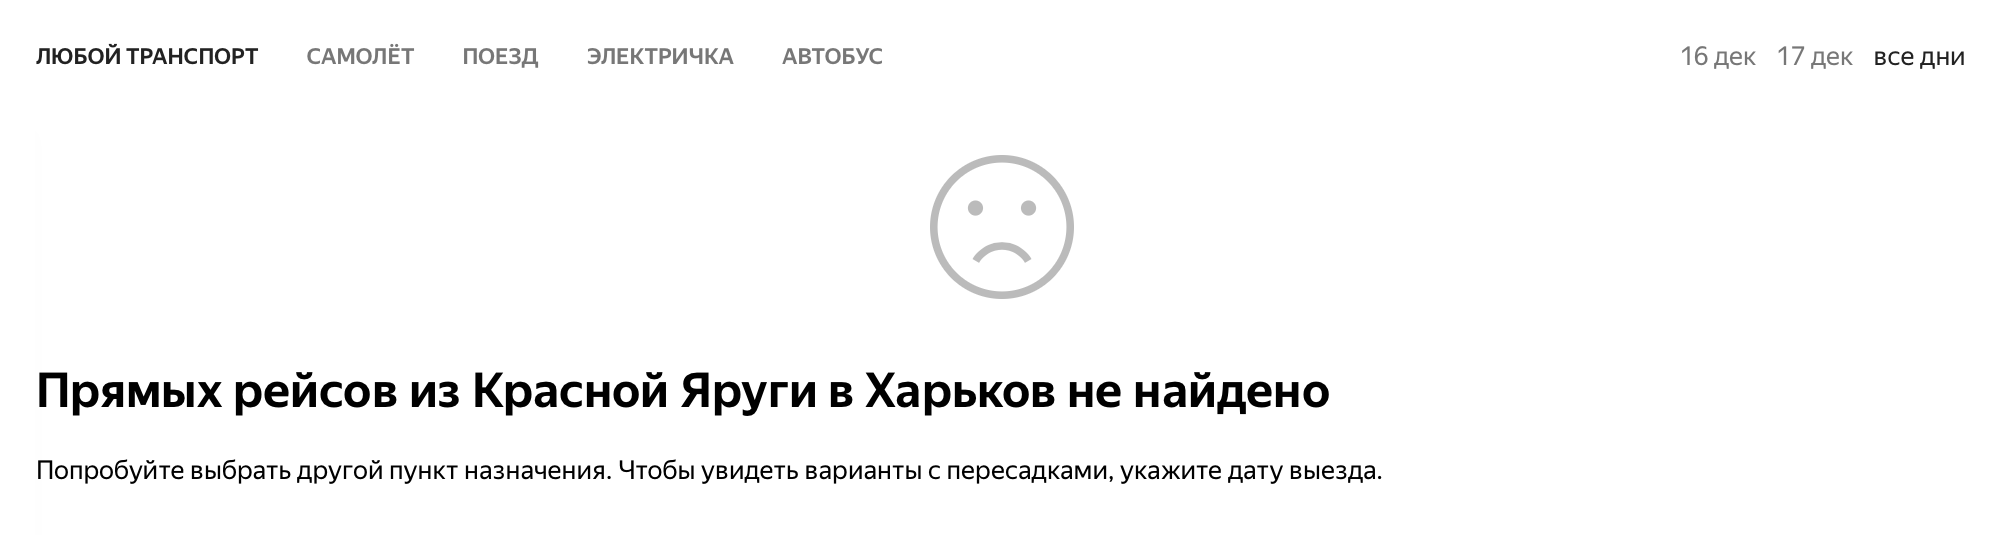 Согласен, Яндекс, это печально